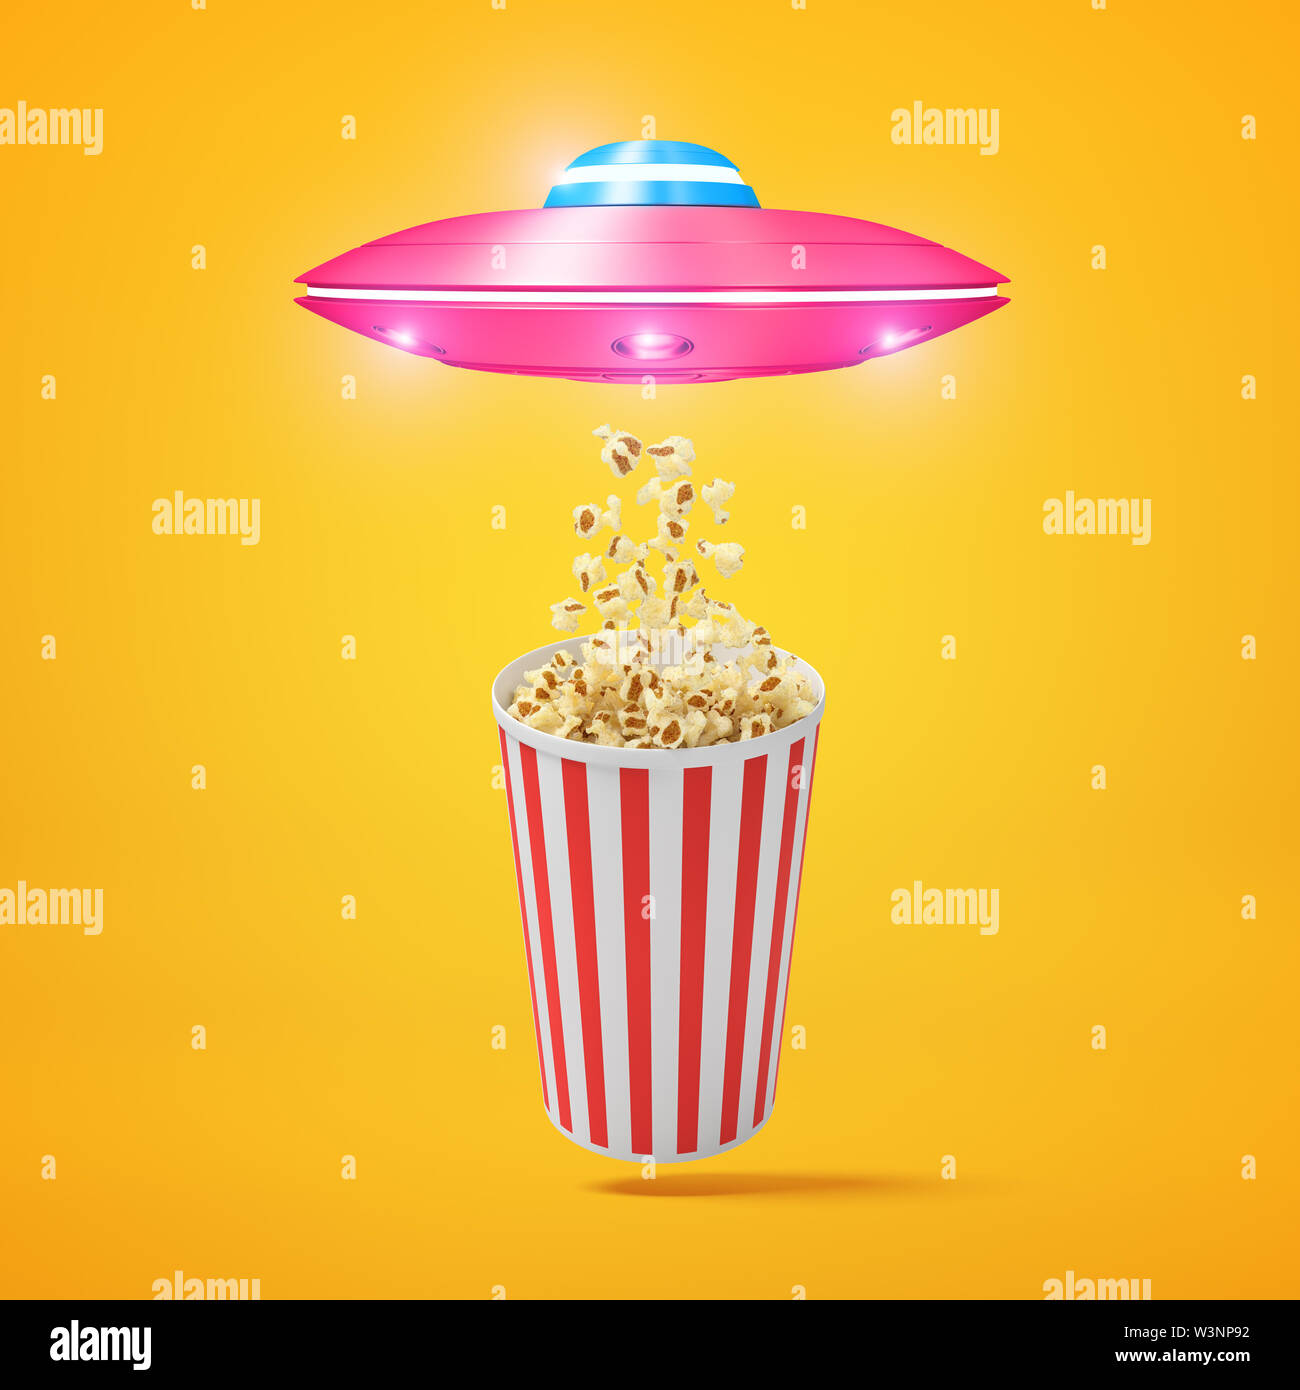 Le rendu 3d de petites rayures rose OVNI volant au-dessus des seau de maîs éclaté et le dessin du popcorn vers son écoutille sur fond orange. Banque D'Images